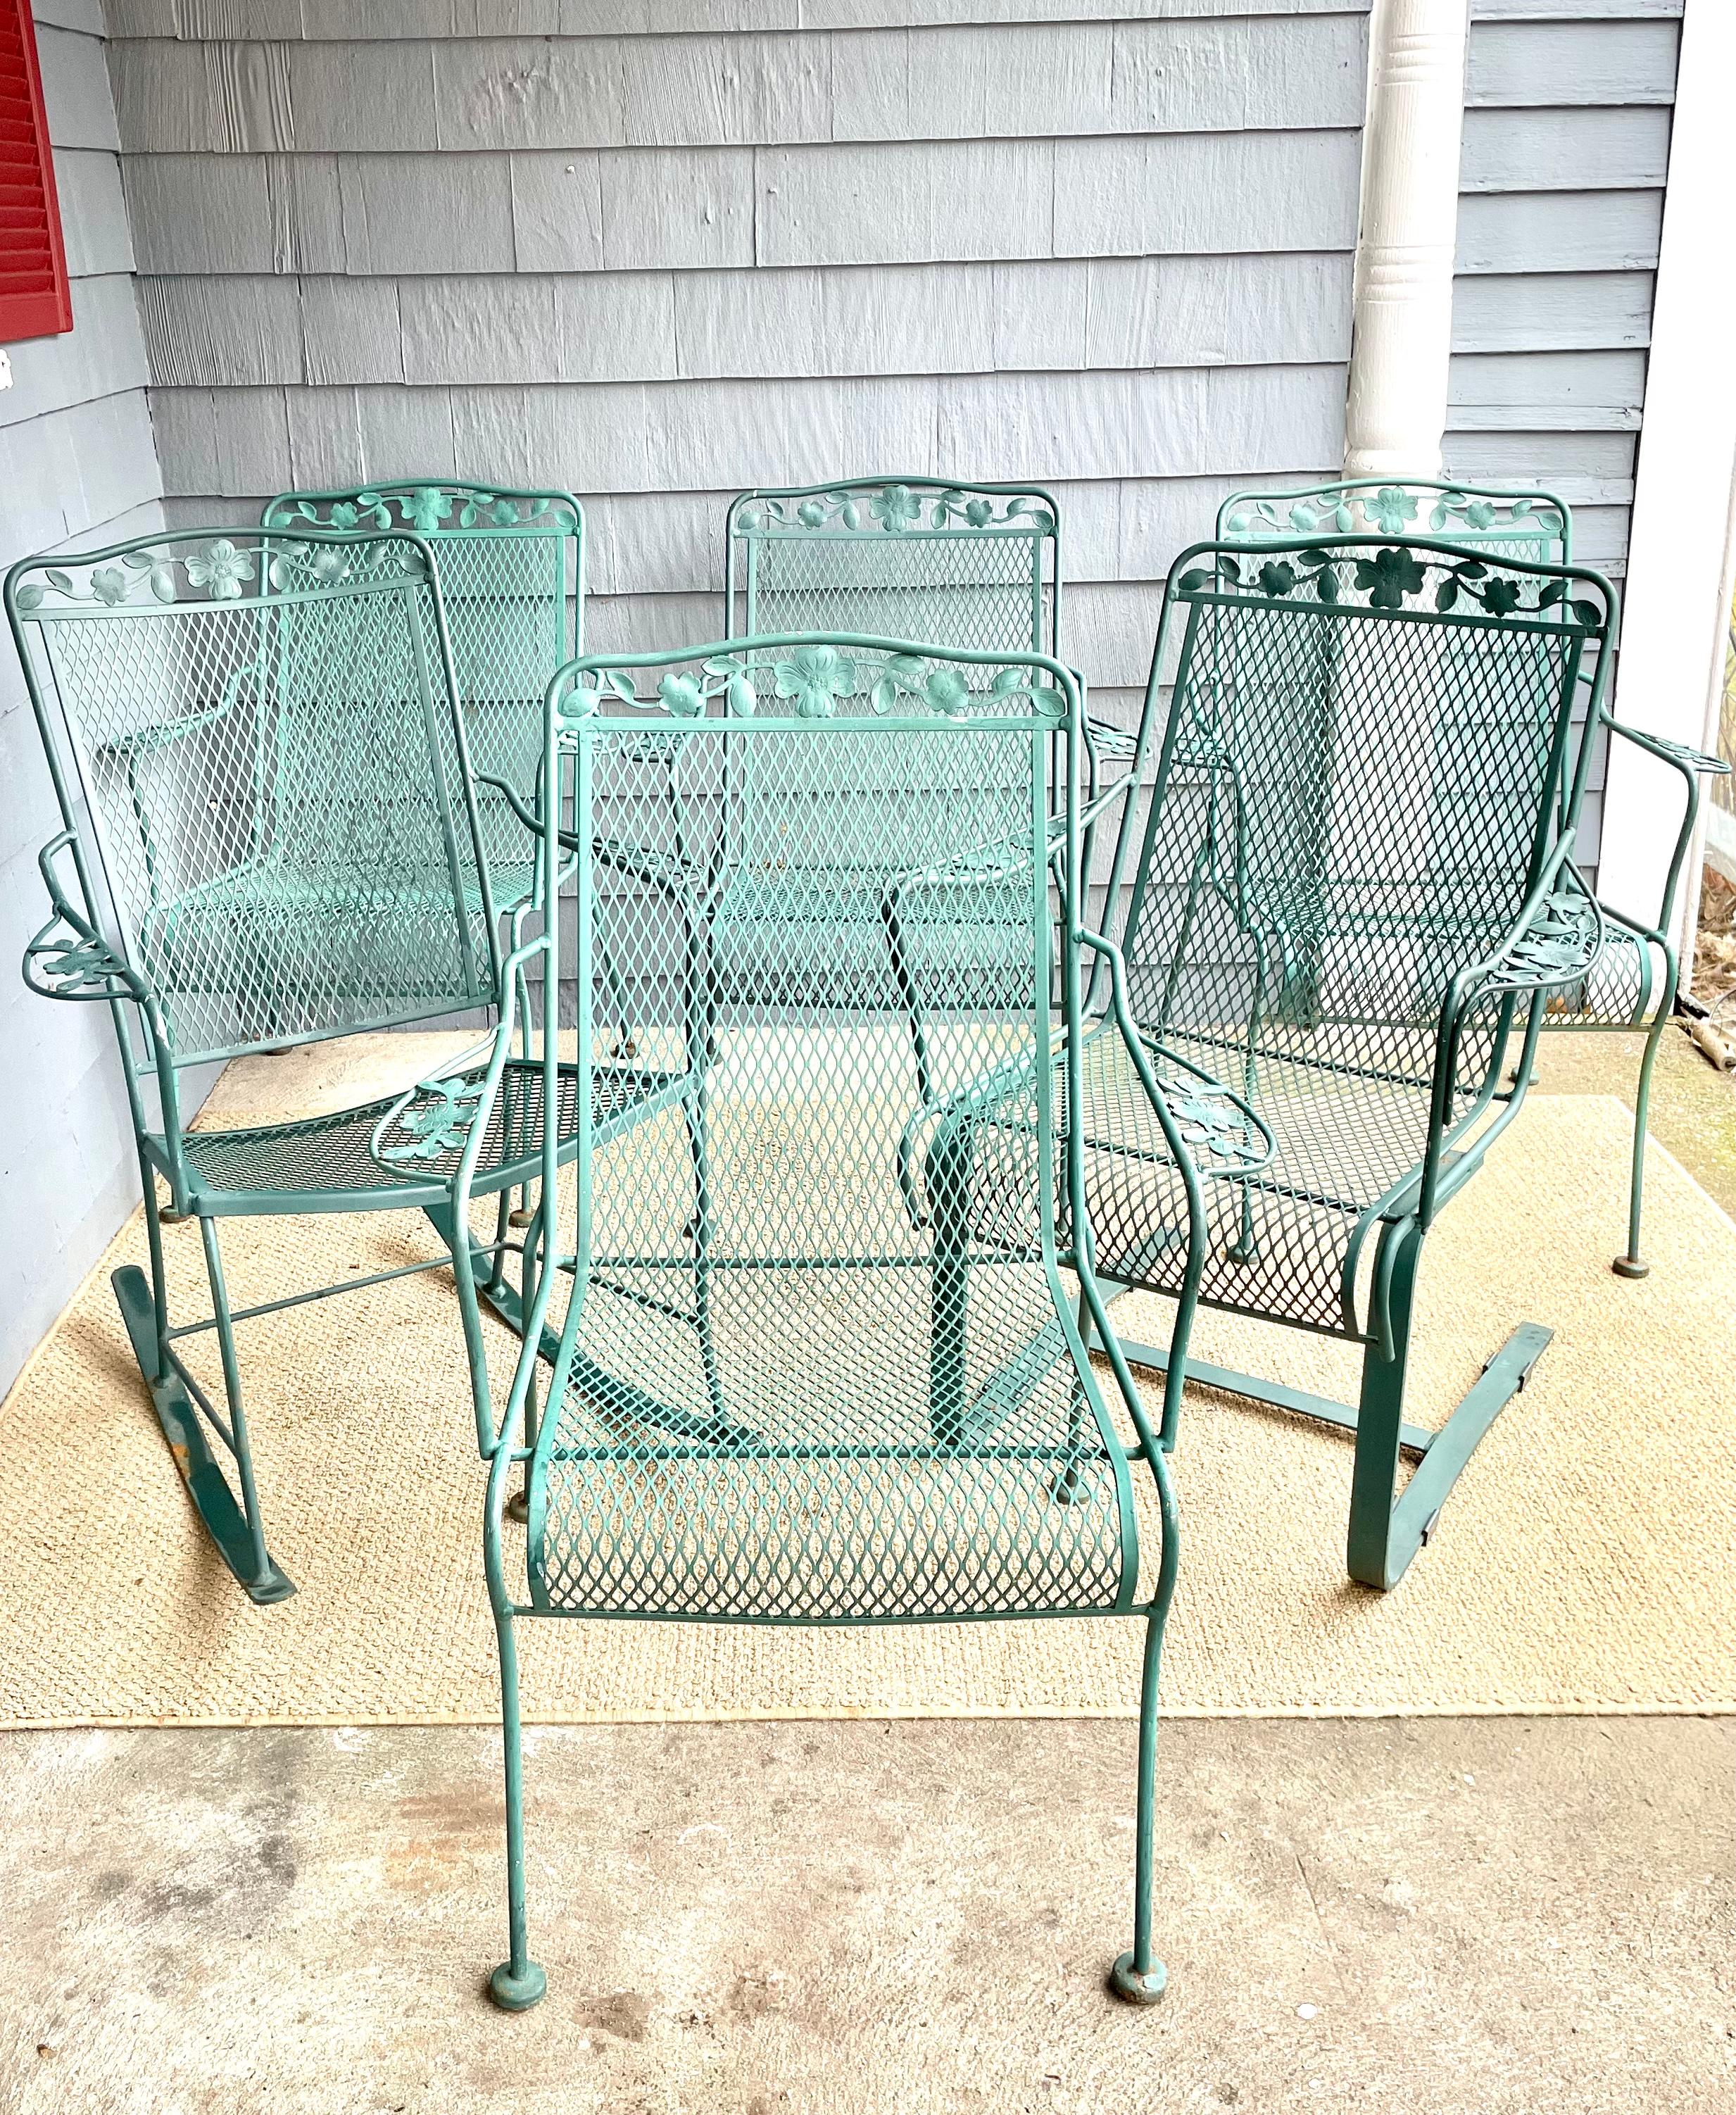 Disponible maintenant pour votre plaisir et prêt à être expédié est un ensemble de 6 chaises de patio en fer forgé vintage, y compris un Rocker Arm Chair et Spring Chair pour l'extérieur. 

Cet ensemble de 6 chaises en fer forgé est le complément